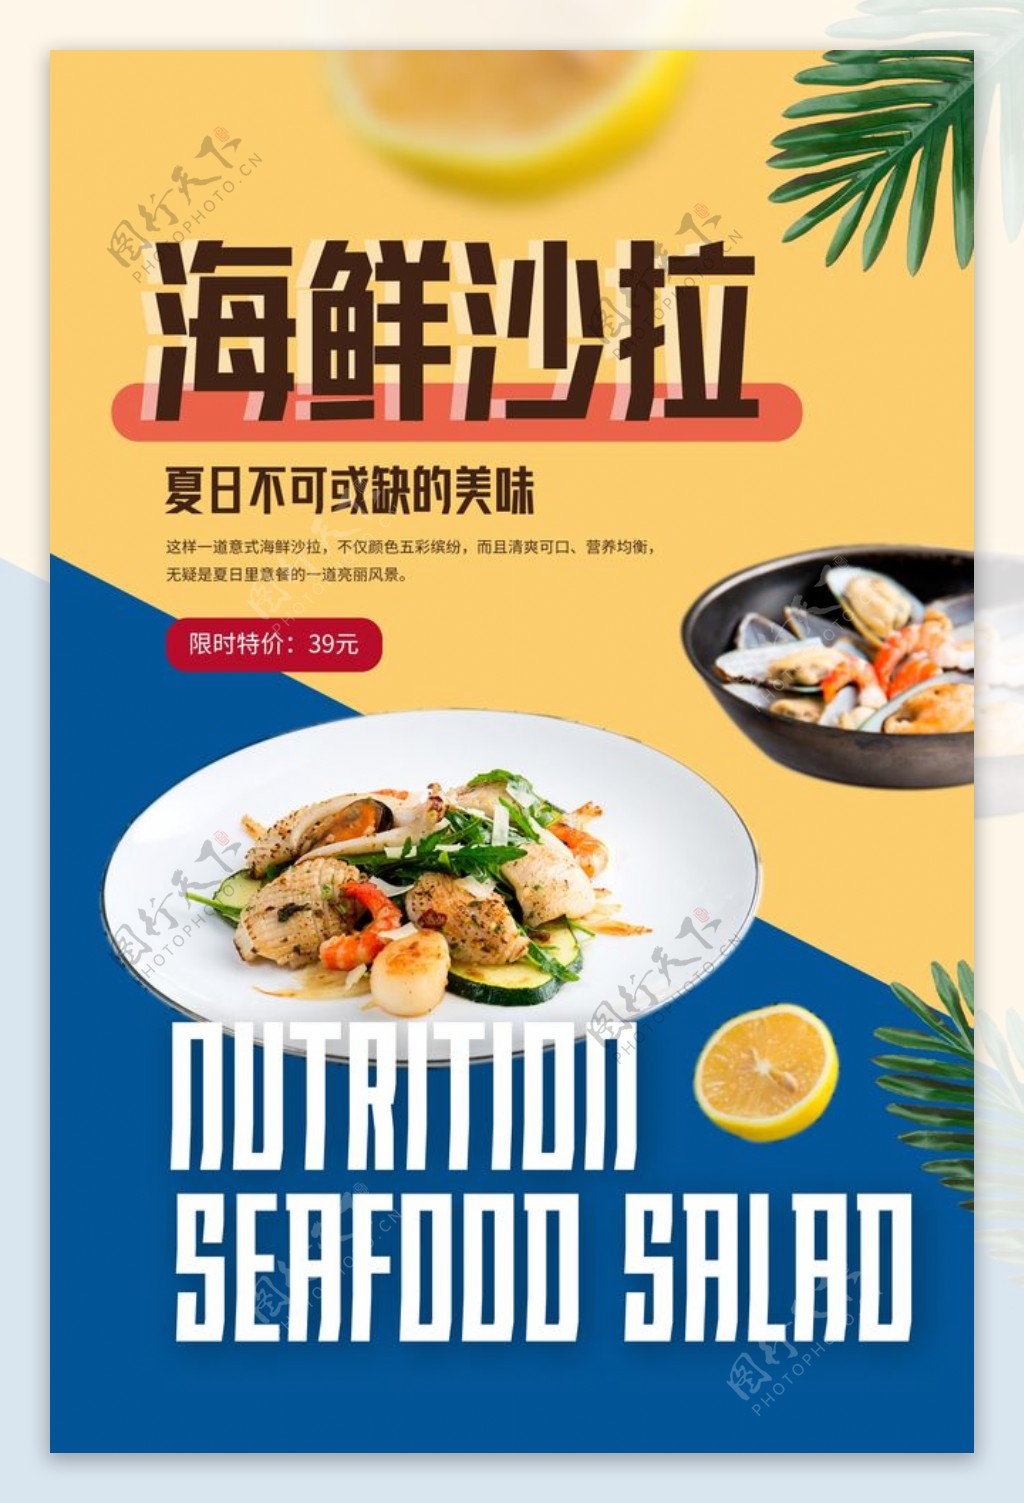 海鲜沙拉美食活动宣传海报素材图片